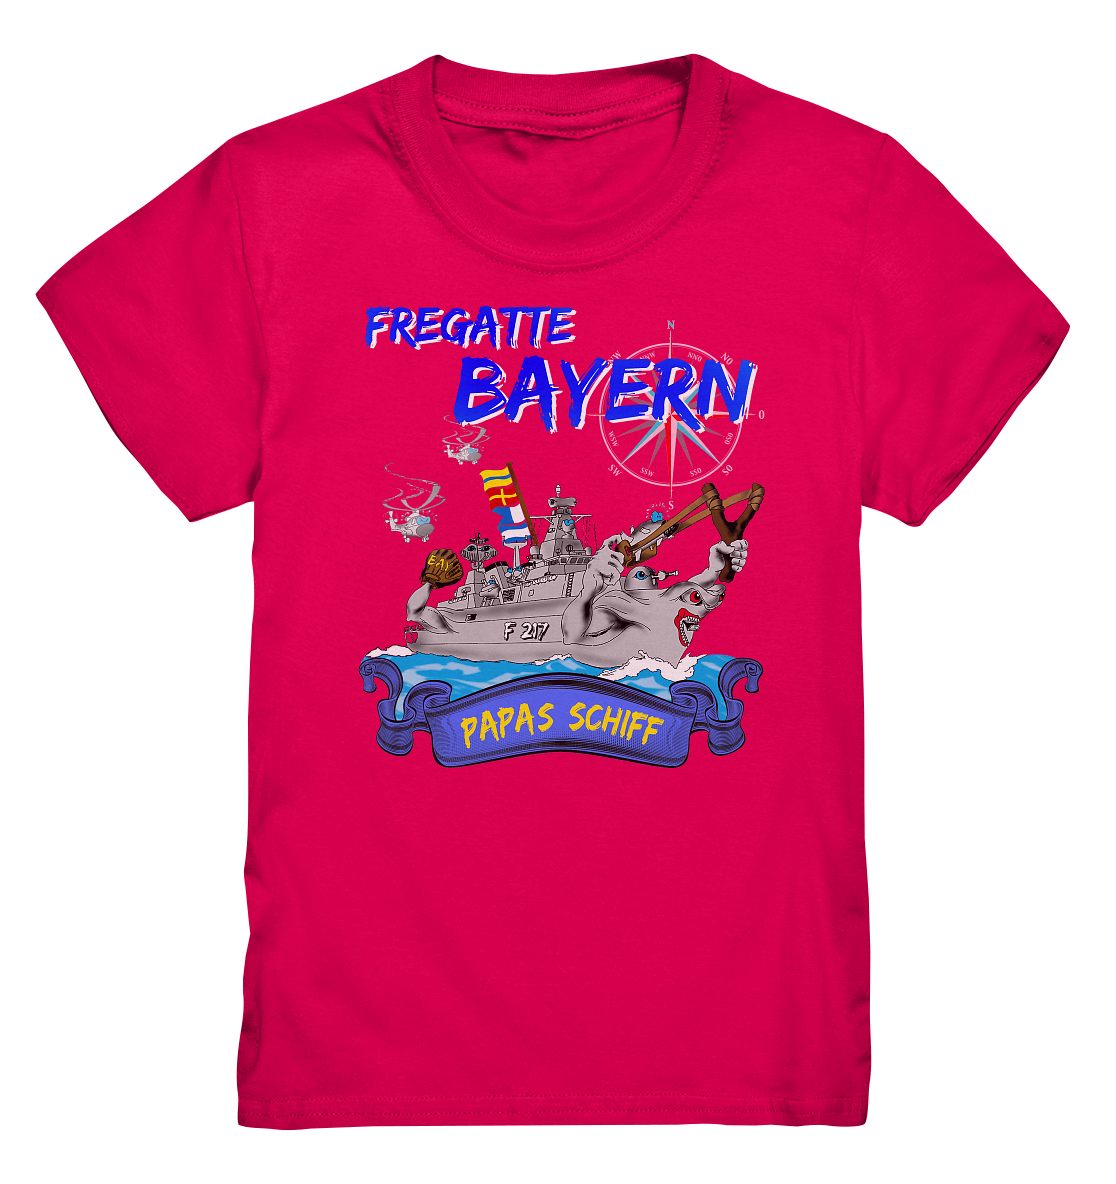 Fregatte F217 BAYERN Papas Schiff - Kids Premium Shirt